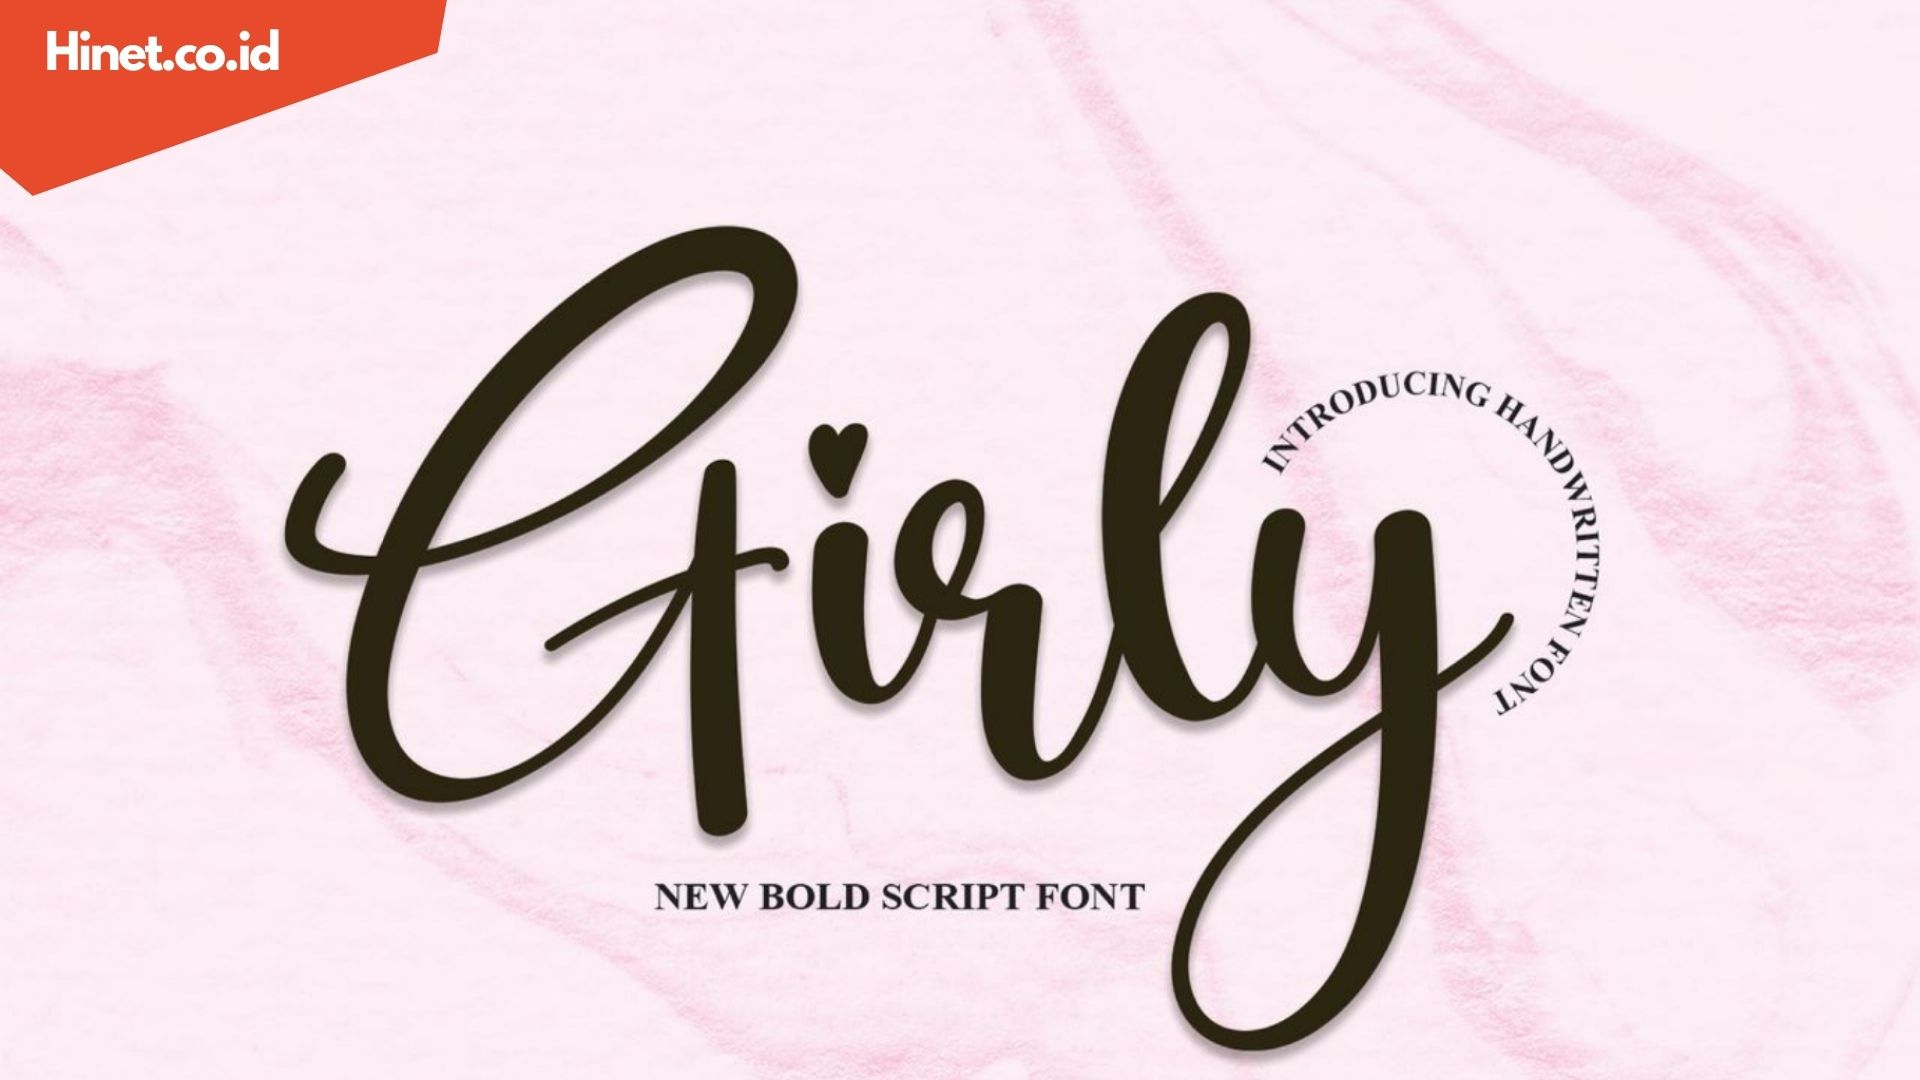 Cara Menggunakan Girly Font yang Ciamik untuk Desain